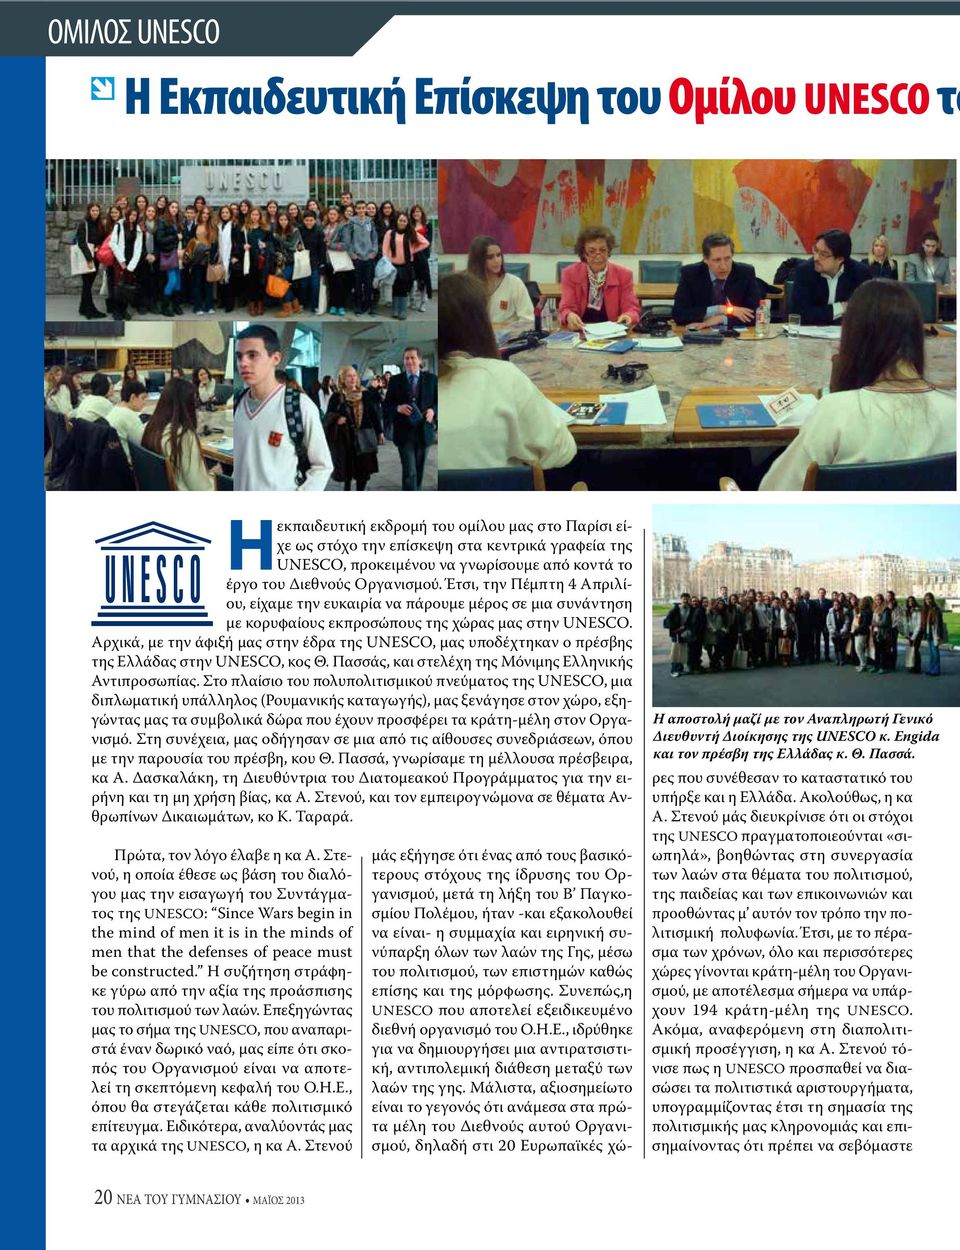 Αρχικά, με την άφιξή μας στην έδρα της UNESCO, μας υποδέχτηκαν ο πρέσβης της Ελλάδας στην UNESCO, κος Θ. Πασσάς, και στελέχη της Μόνιμης Ελληνικής Αντιπροσωπίας.